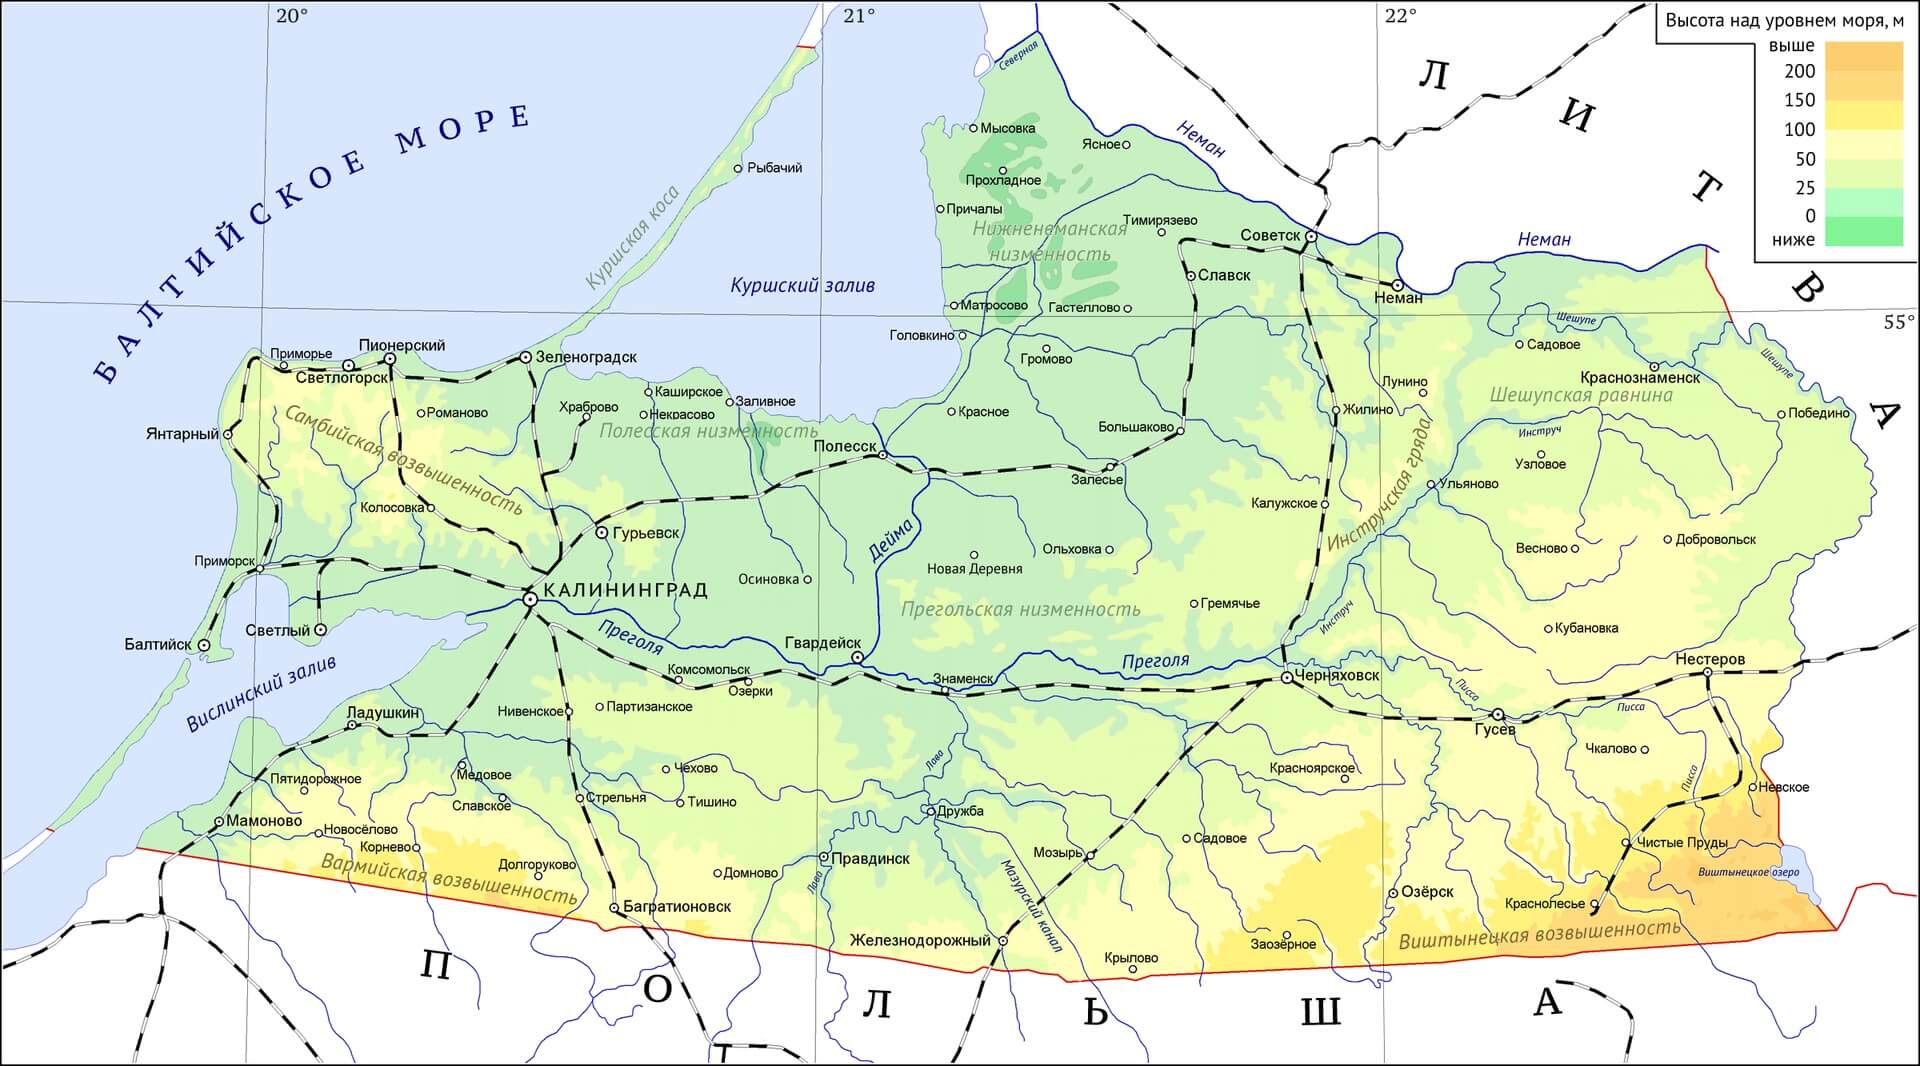 Подробная карта калининградской области с населенными пунктами